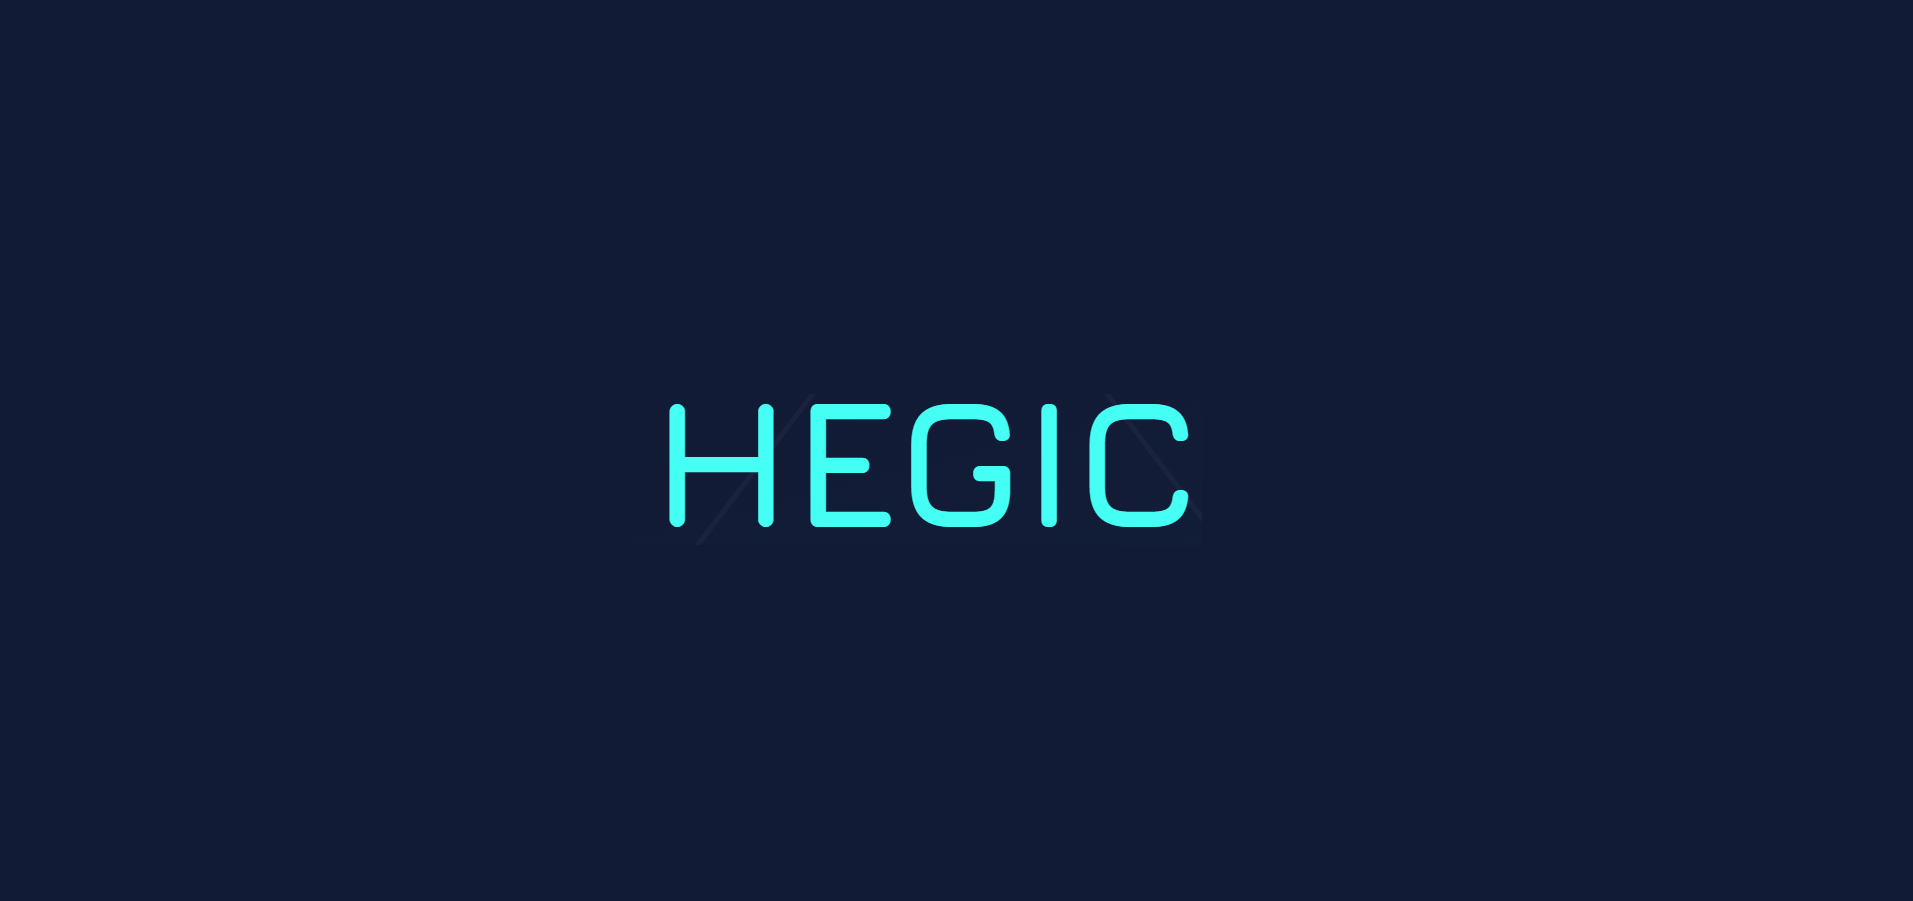 Hegic (HEGIC) là gì? Tất cả thông tin về dự n Hegic